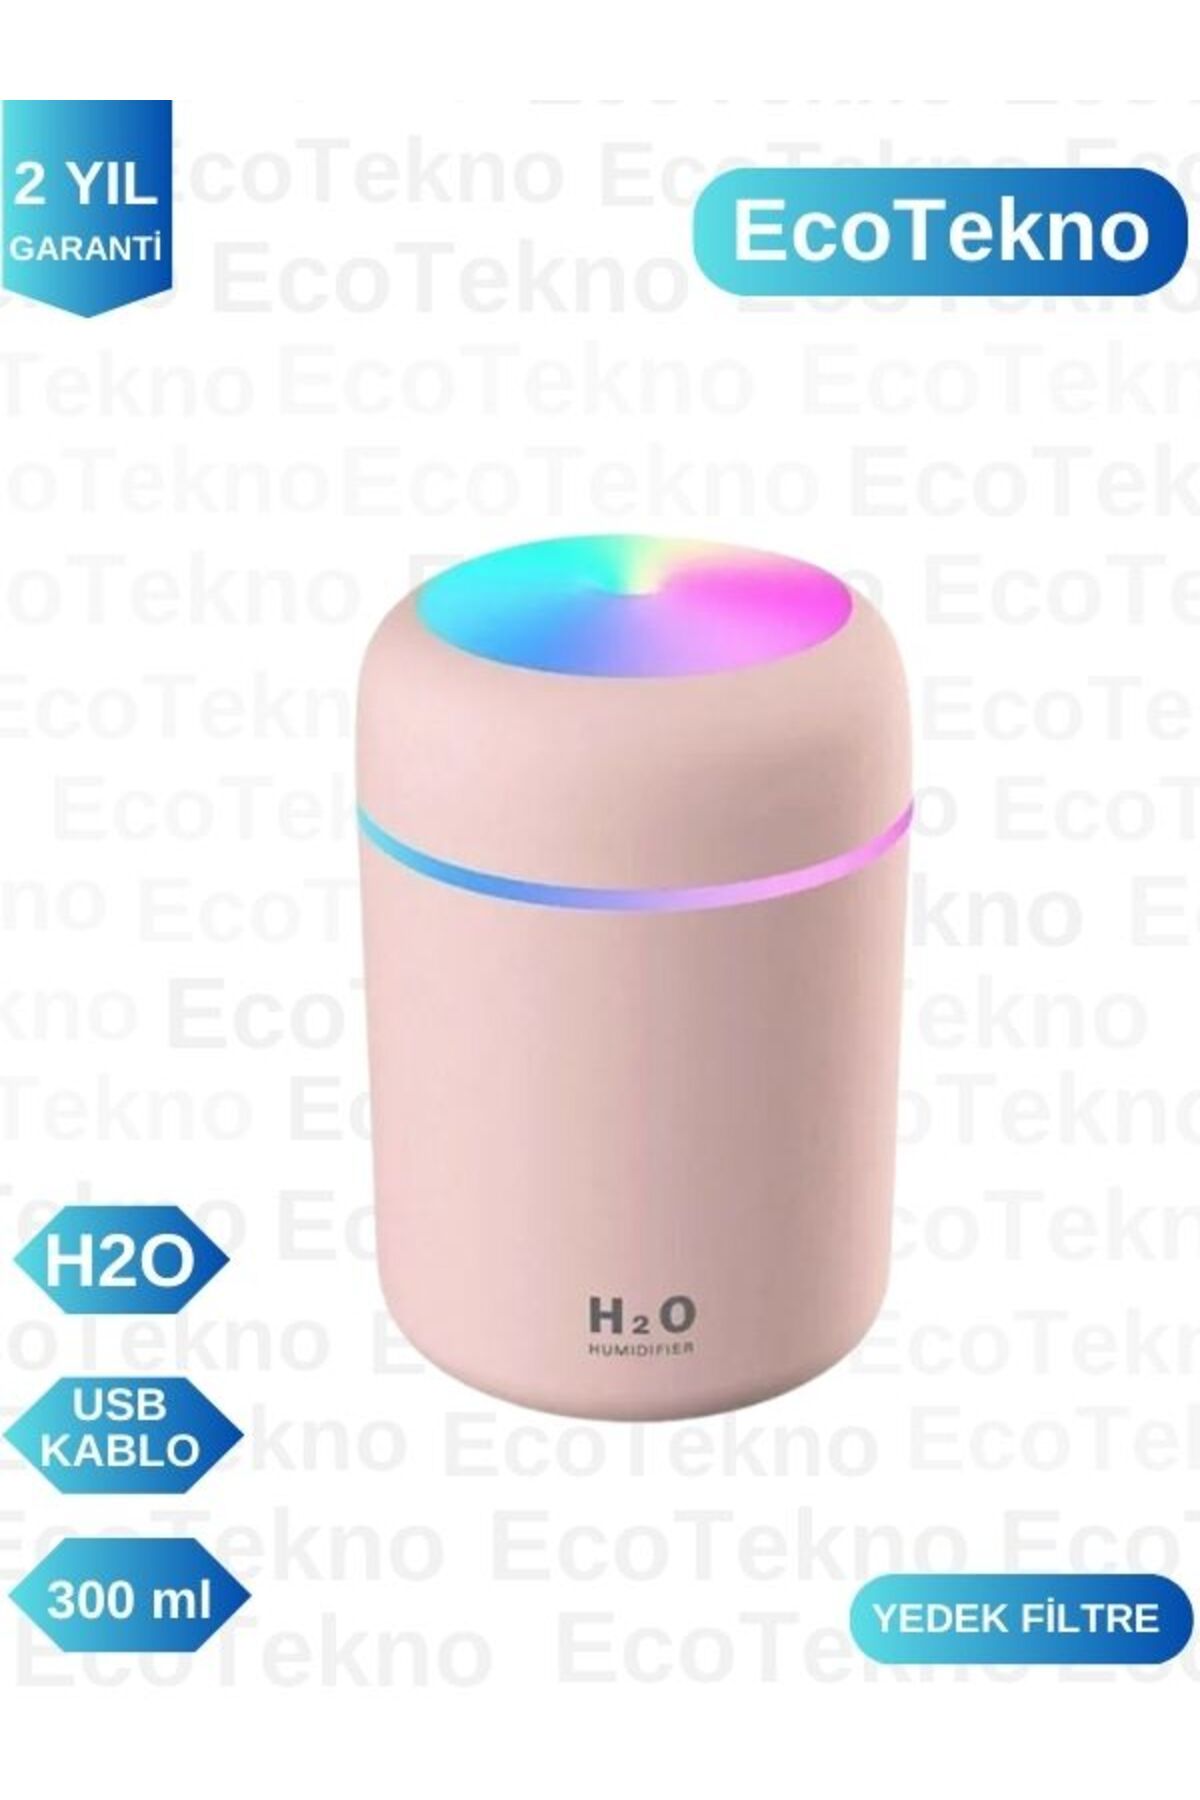 EcoTekno H2O Humidifier 300 ml Ulrasonik Hava Nemlendirici Buhar Makinesi ve Aroma Difüzörü